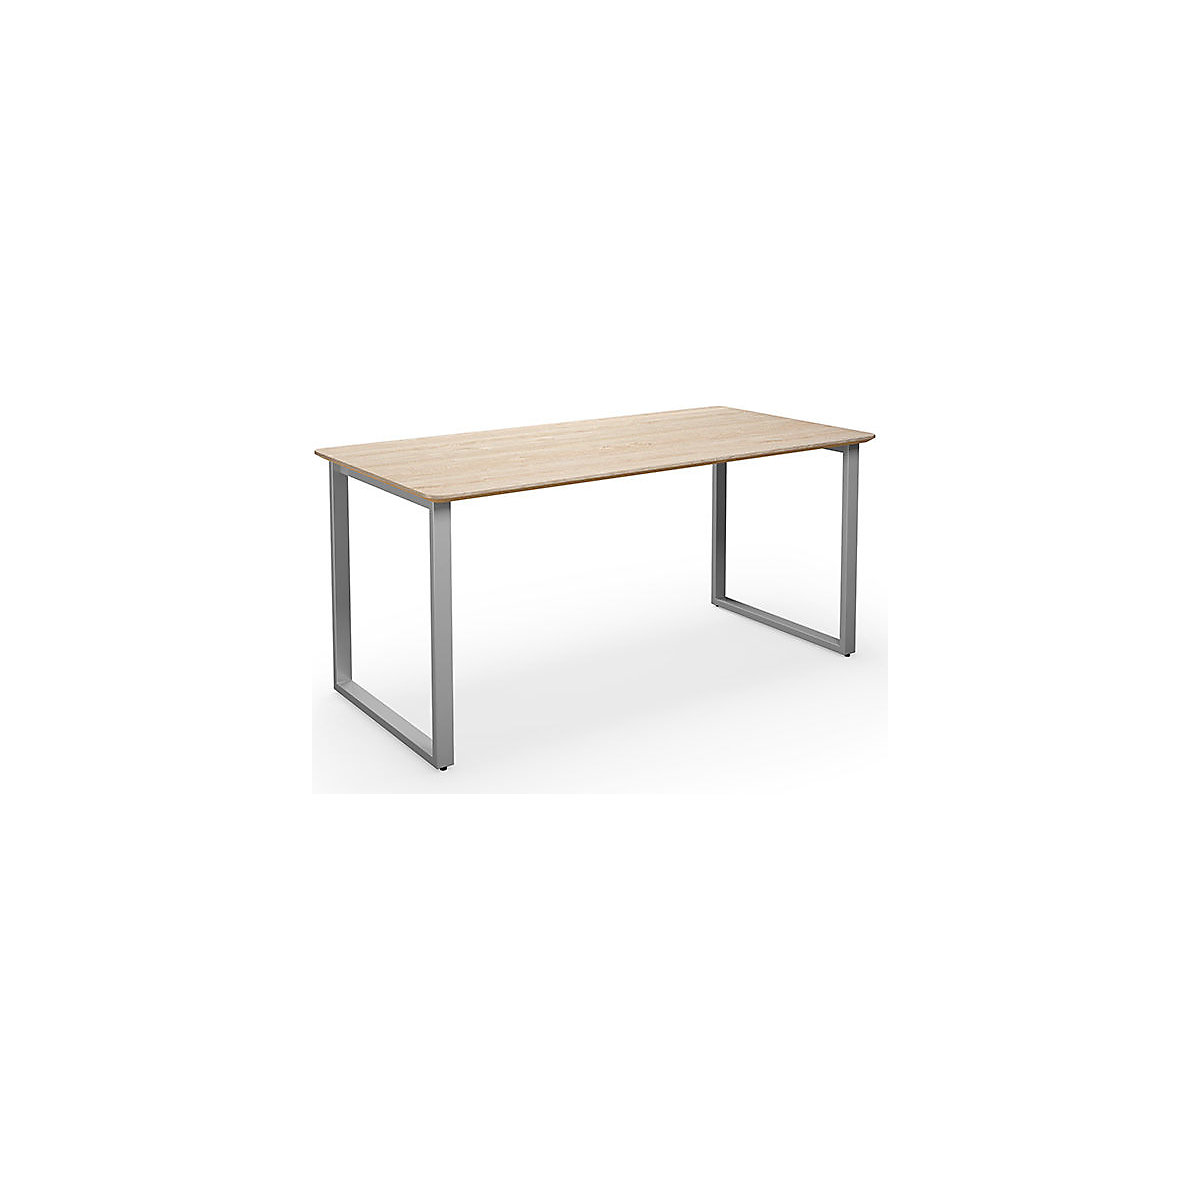 Višenamjenski stol DUO-O Trend, ravna ploča, zaobljeni kutovi